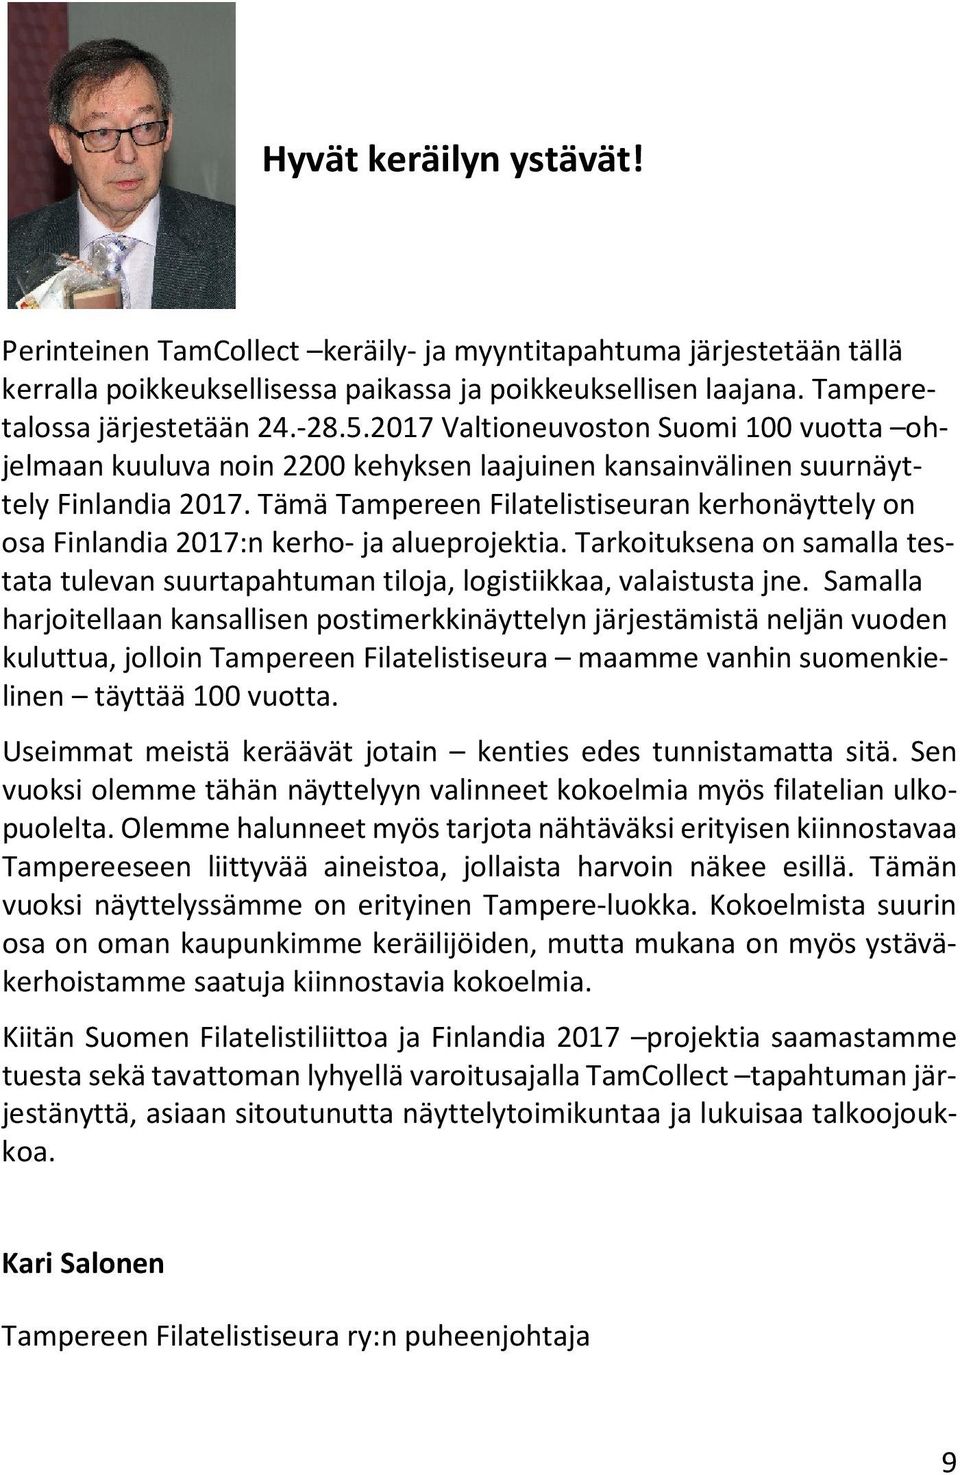 Tämä Tampereen Filatelistiseuran kerhonäyttely on osa Finlandia 2017:n kerho- ja alueprojektia. Tarkoituksena on samalla testata tulevan suurtapahtuman tiloja, logistiikkaa, valaistusta jne.